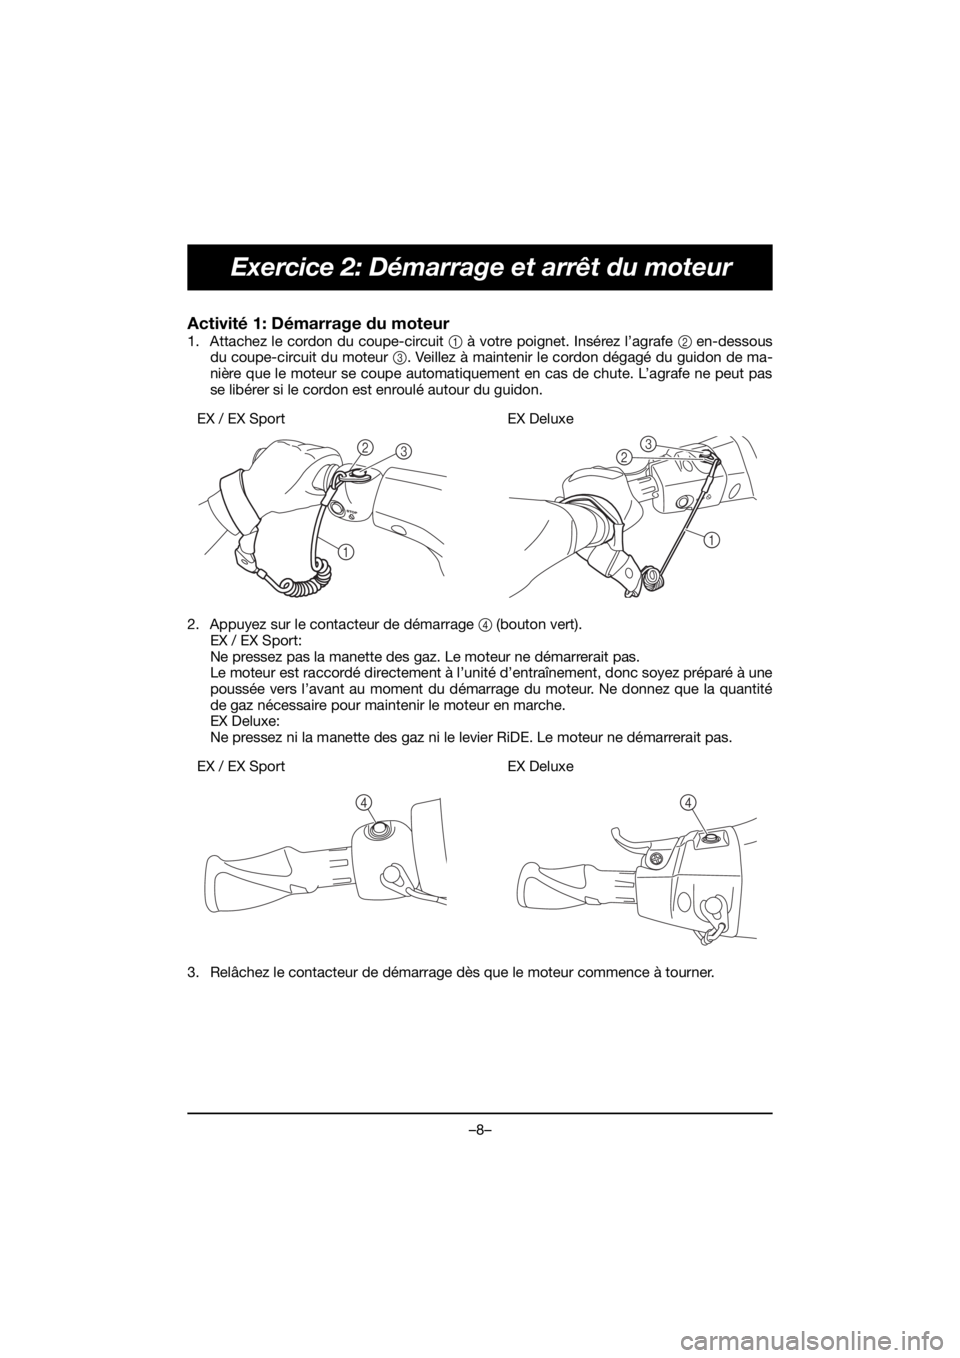 YAMAHA EX 2019  Notices Demploi (in French) –8–
Exercice 2: Démarrage et arrêt du moteur
Activité 1: Démarrage du moteur 
1. Attachez le cordon du coupe-circuit 1 à votre poignet. Insérez l’agrafe 2 en-dessous
du coupe-circuit du mo